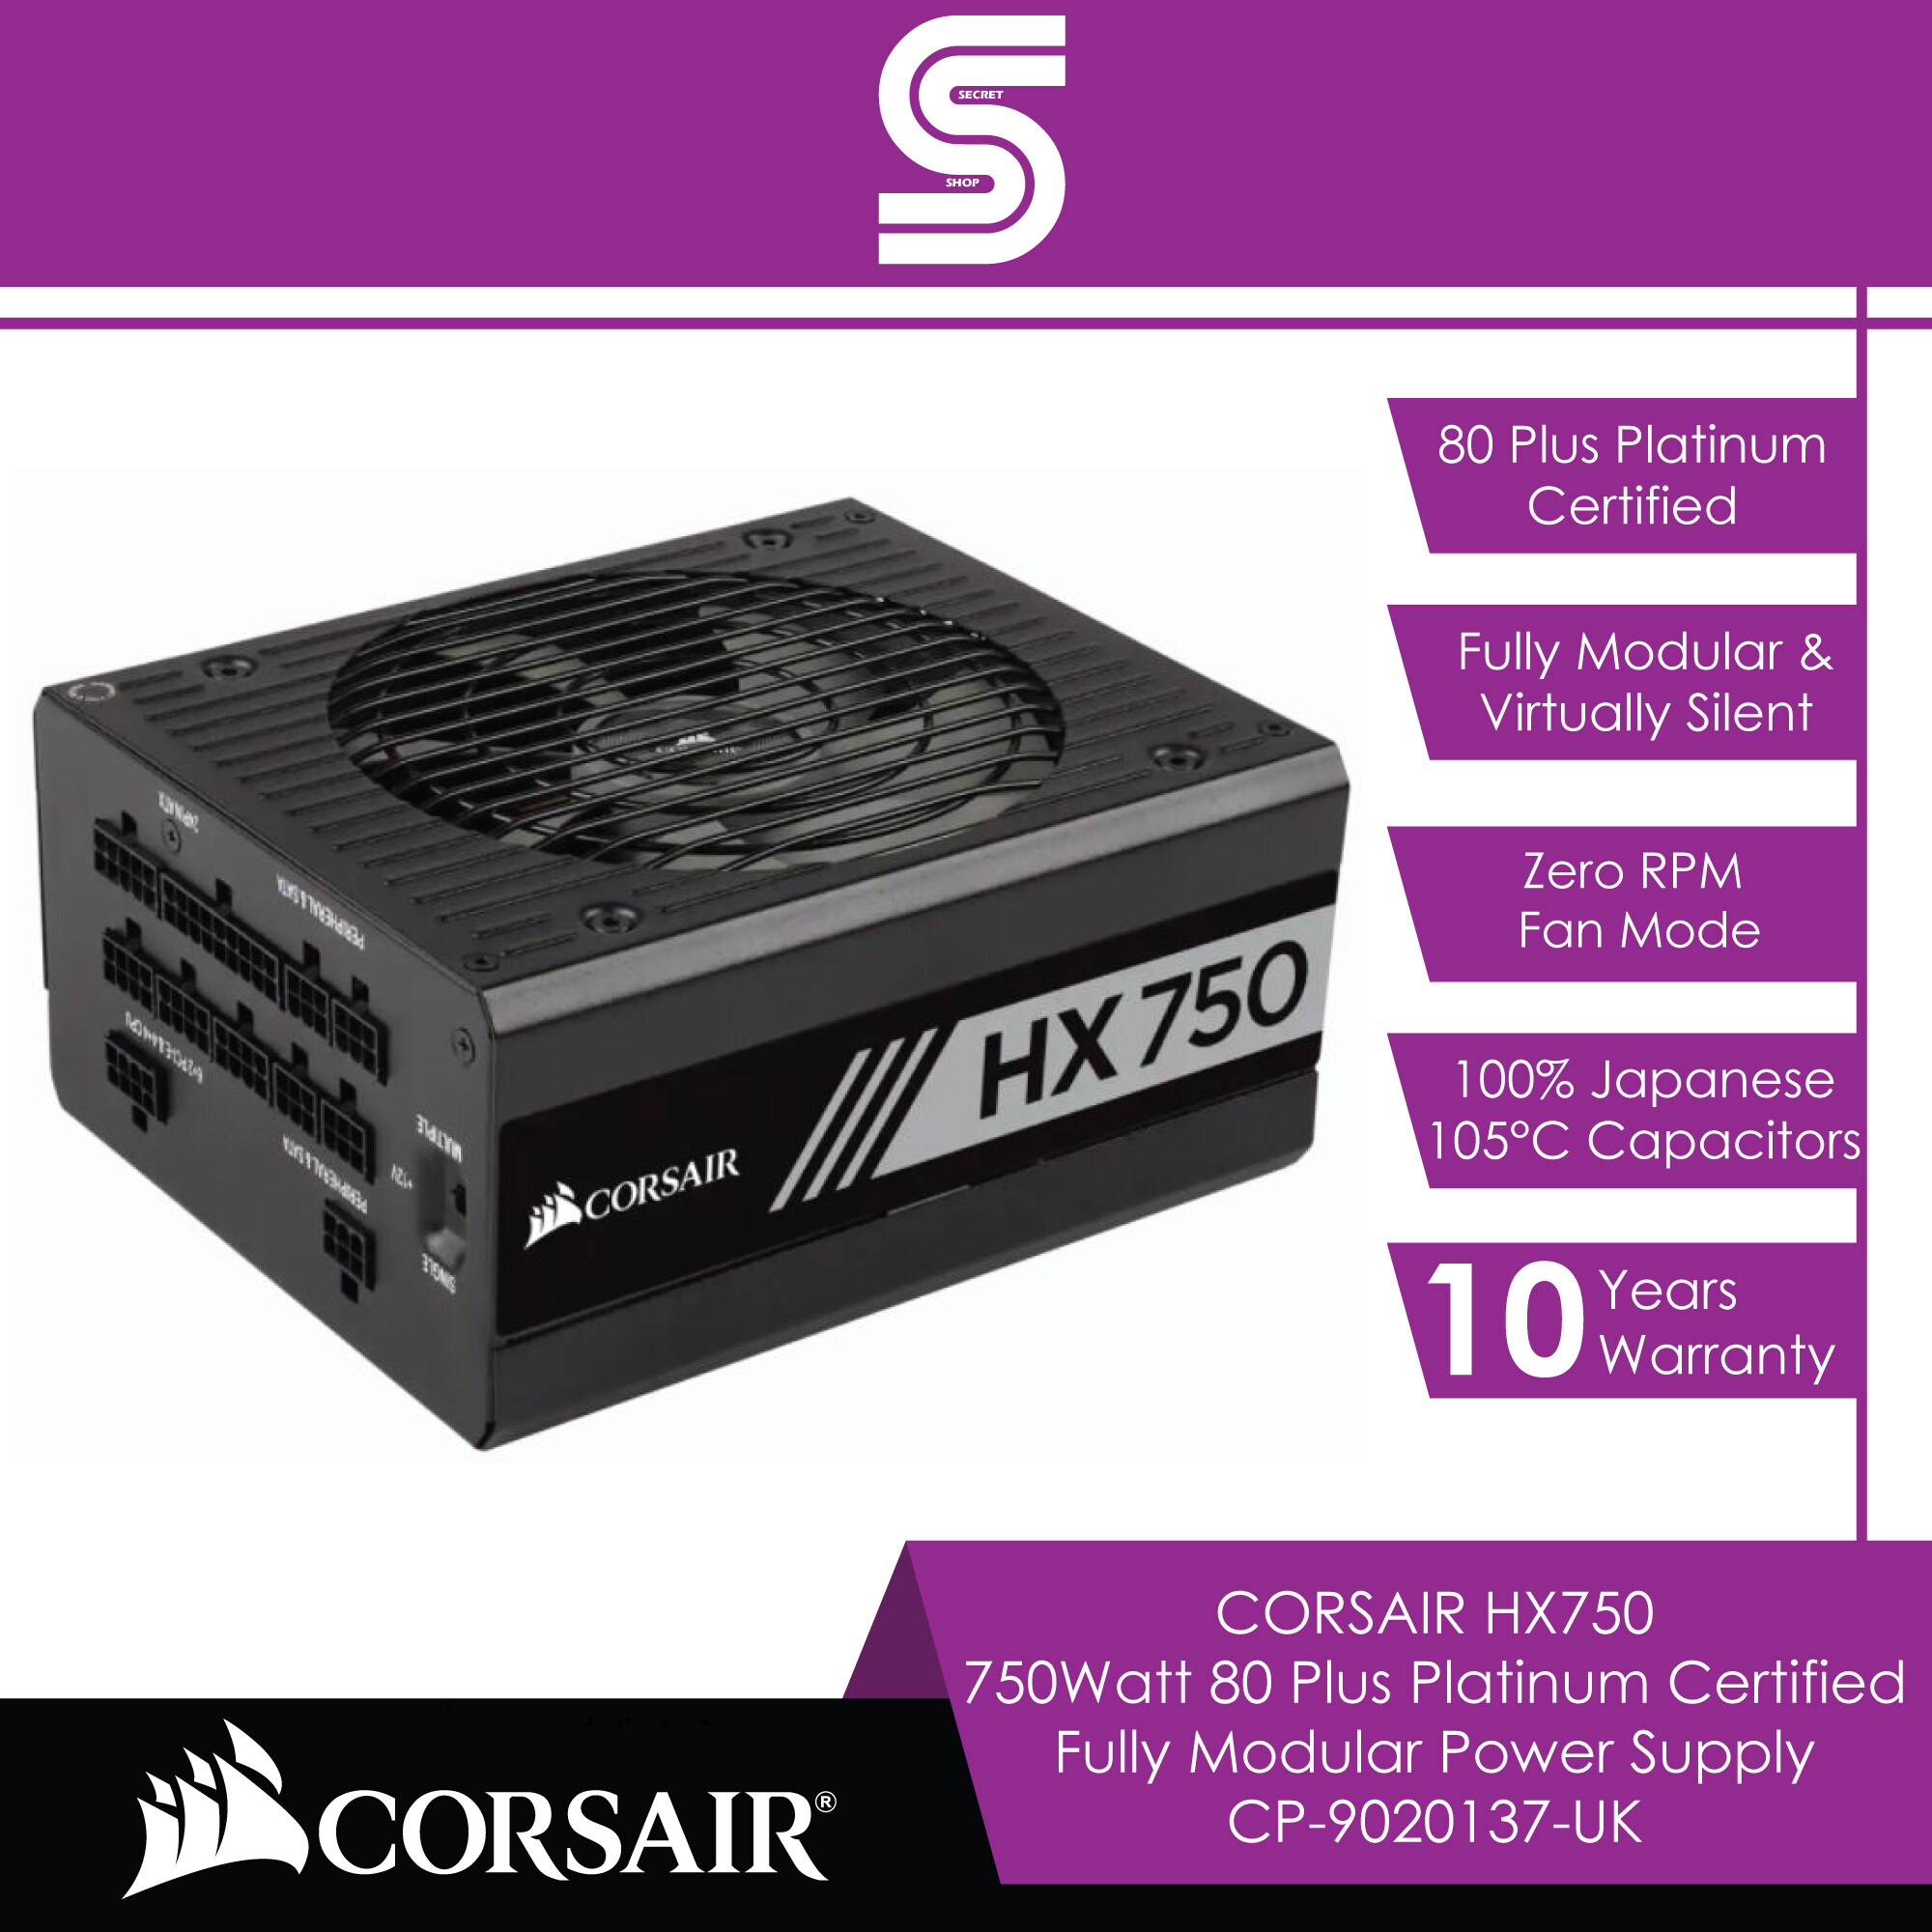 CORSAIR HX750 750Watt 80 Plus Platinum Certified Fully Modular Power Supply - CP-9020137-UK